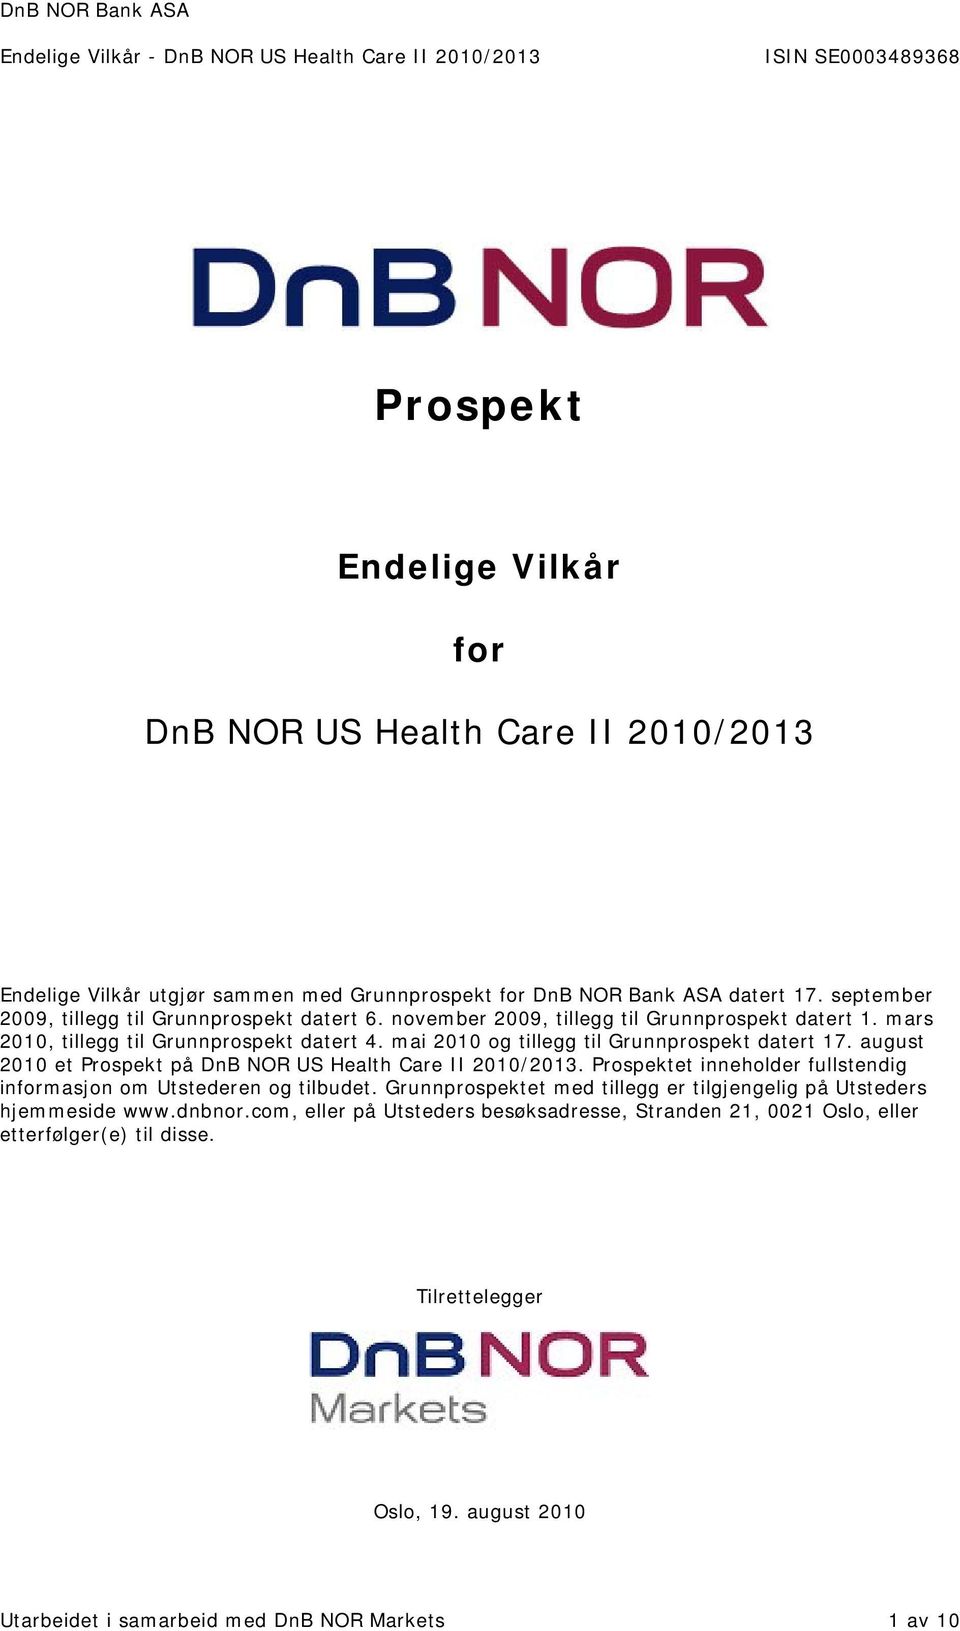 mai 2010 og tillegg til Grunnprospekt datert 17. august 2010 et Prospekt på DnB NOR US Health Care II 2010/2013. Prospektet inneholder fullstendig informasjon om Utstederen og tilbudet.